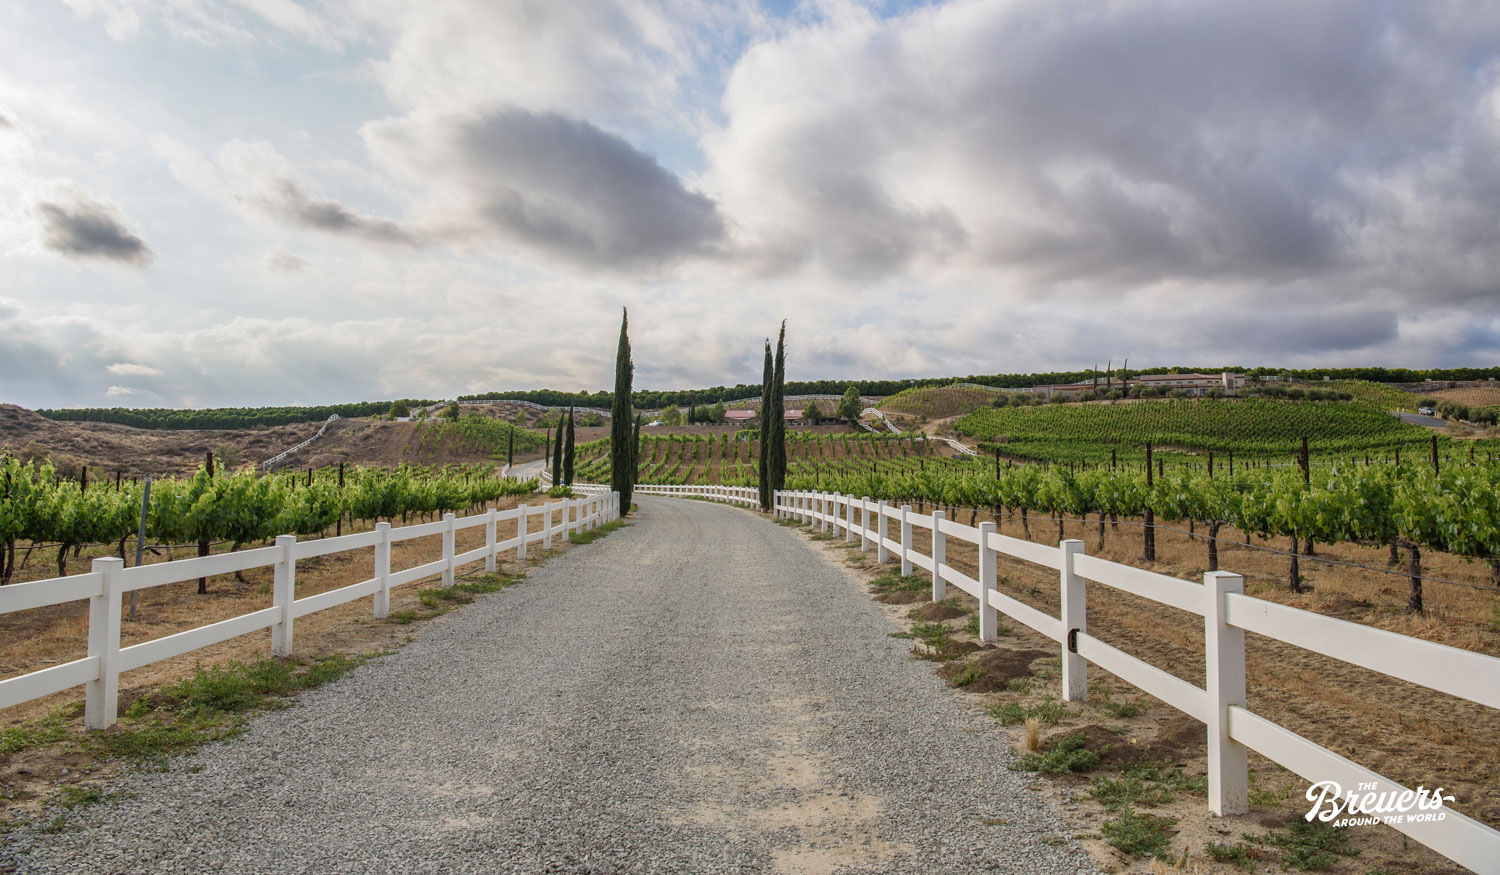 Weinbau Region Temecula Valley in Kalifornien